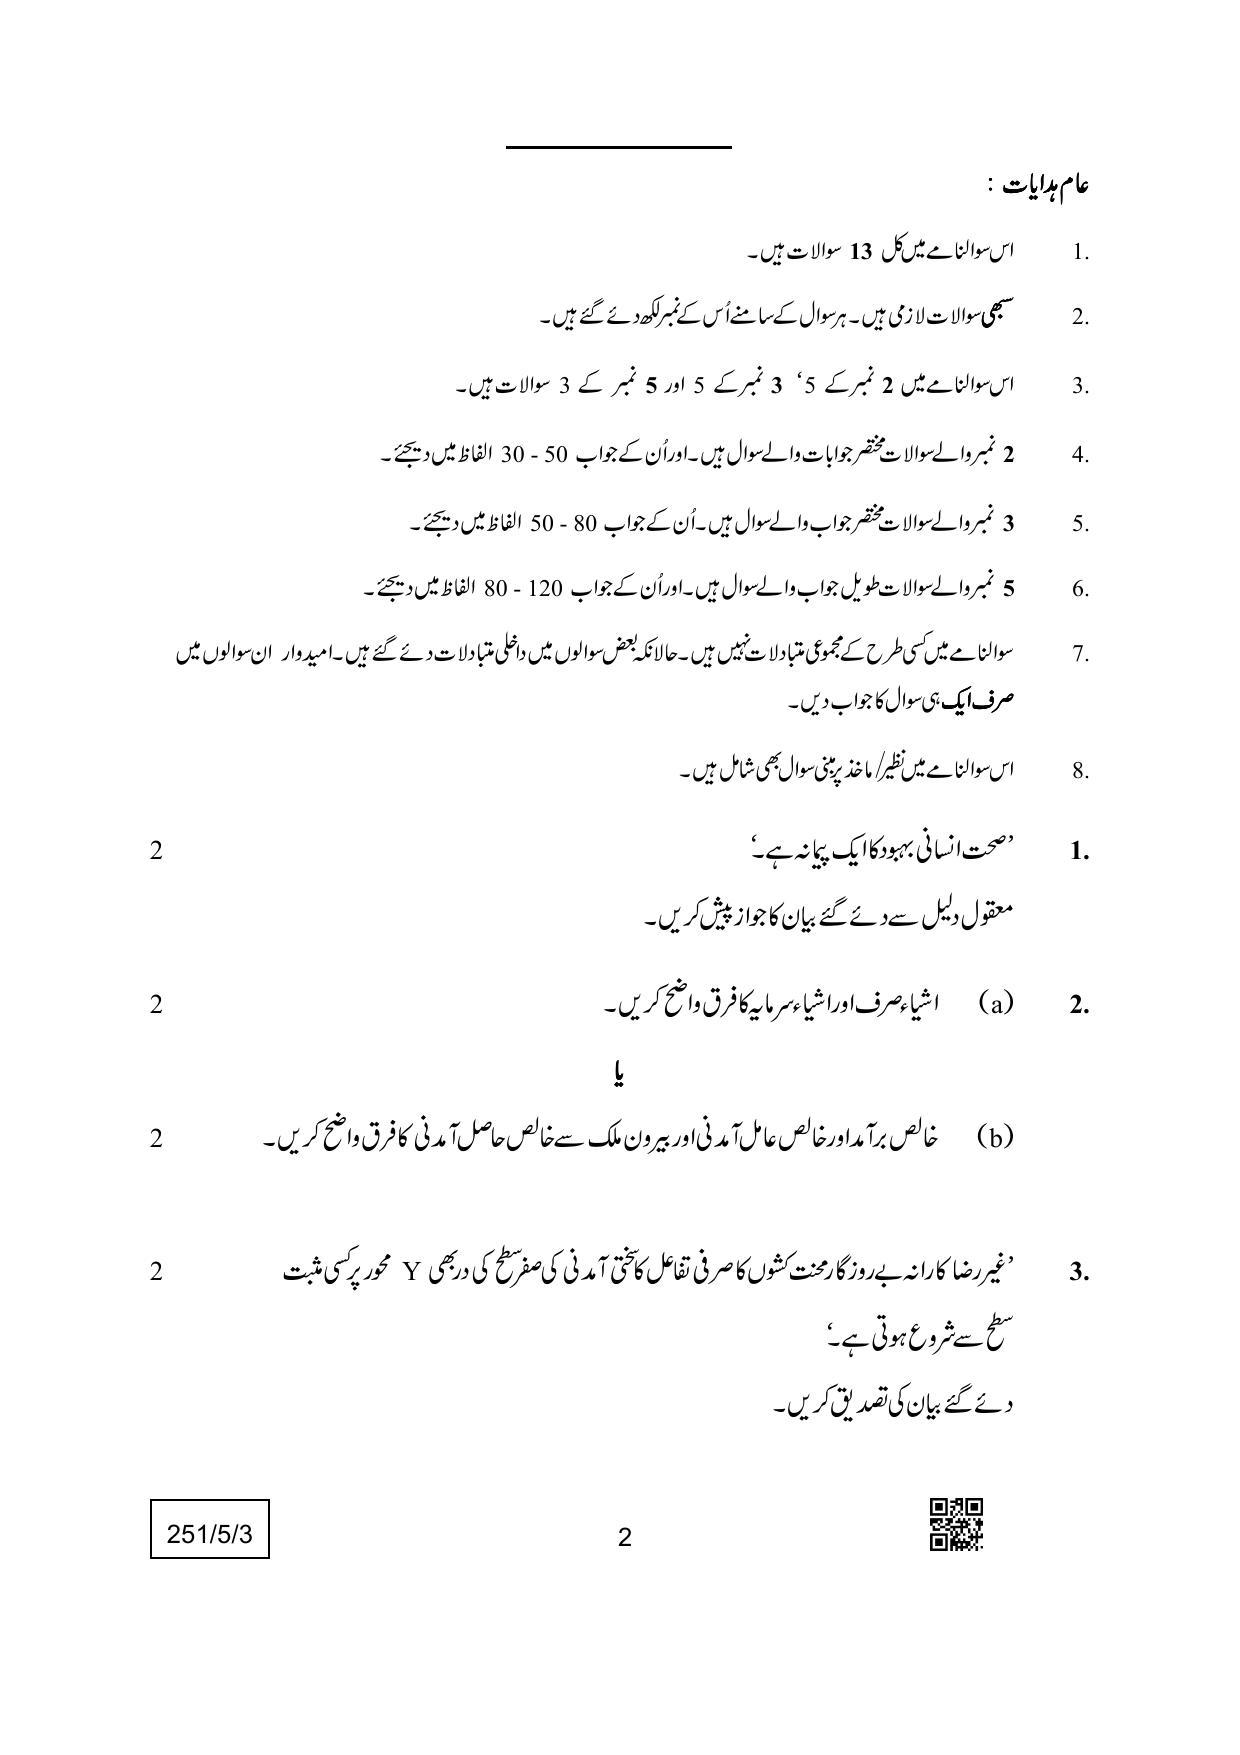 CBSE Class 12 251-5-3 (Economics) Urdu Version 2022 Question Paper - Page 2